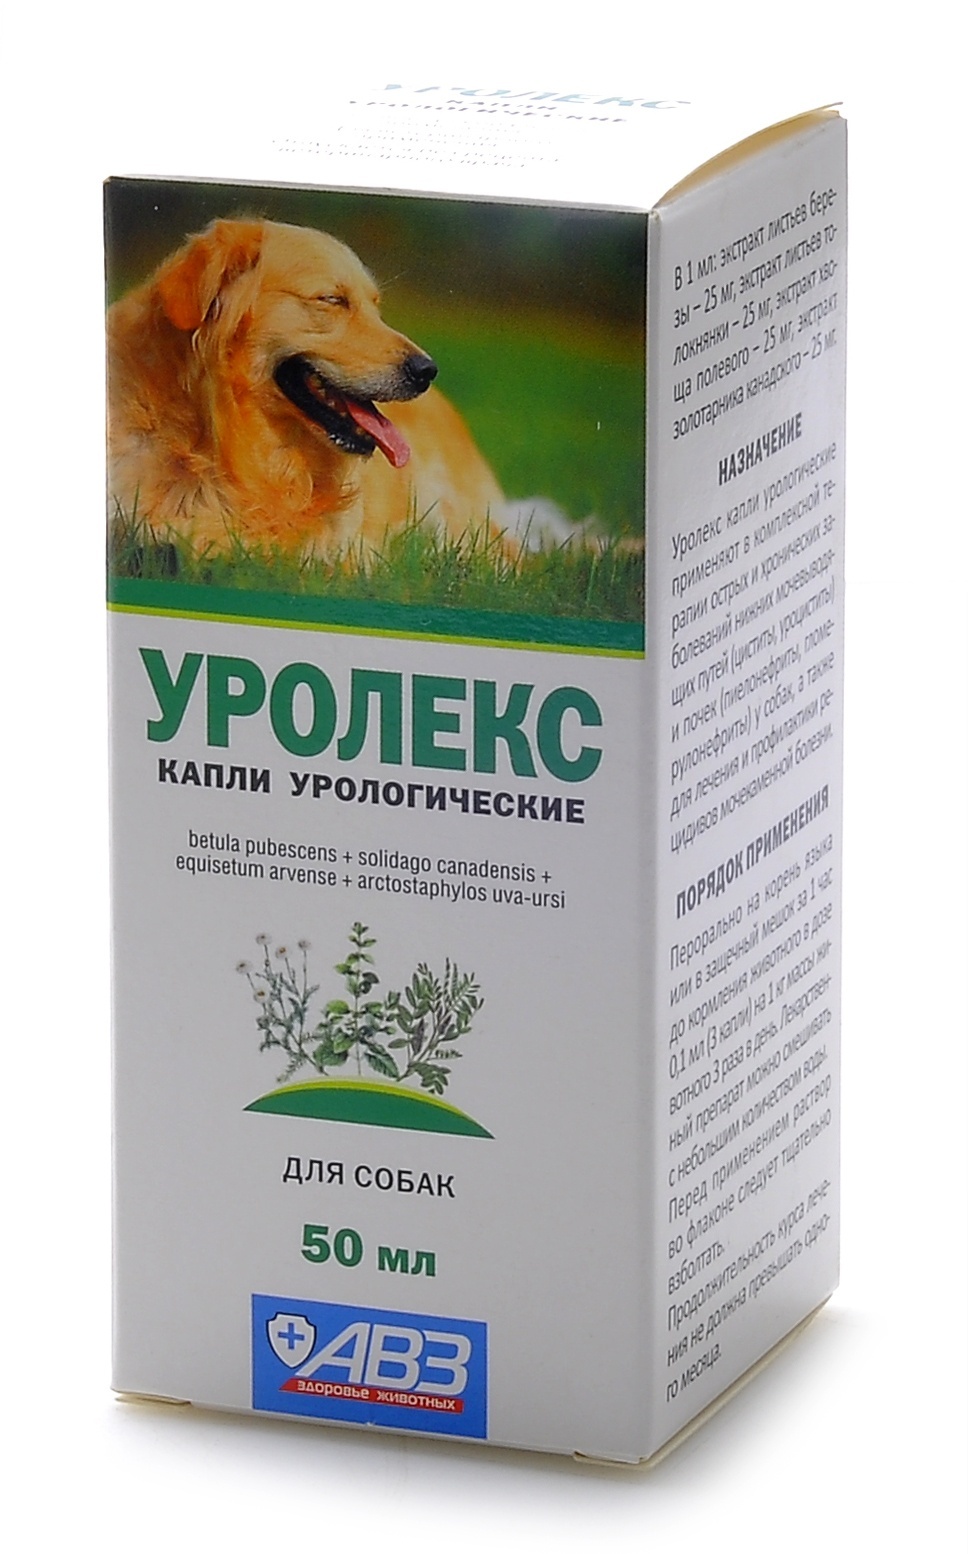 Агроветзащита уролекс для собак -  капли для профилактики и лечения МКБ, острых и хронических заболеваний мочевыводящих путей и почек (143 г)